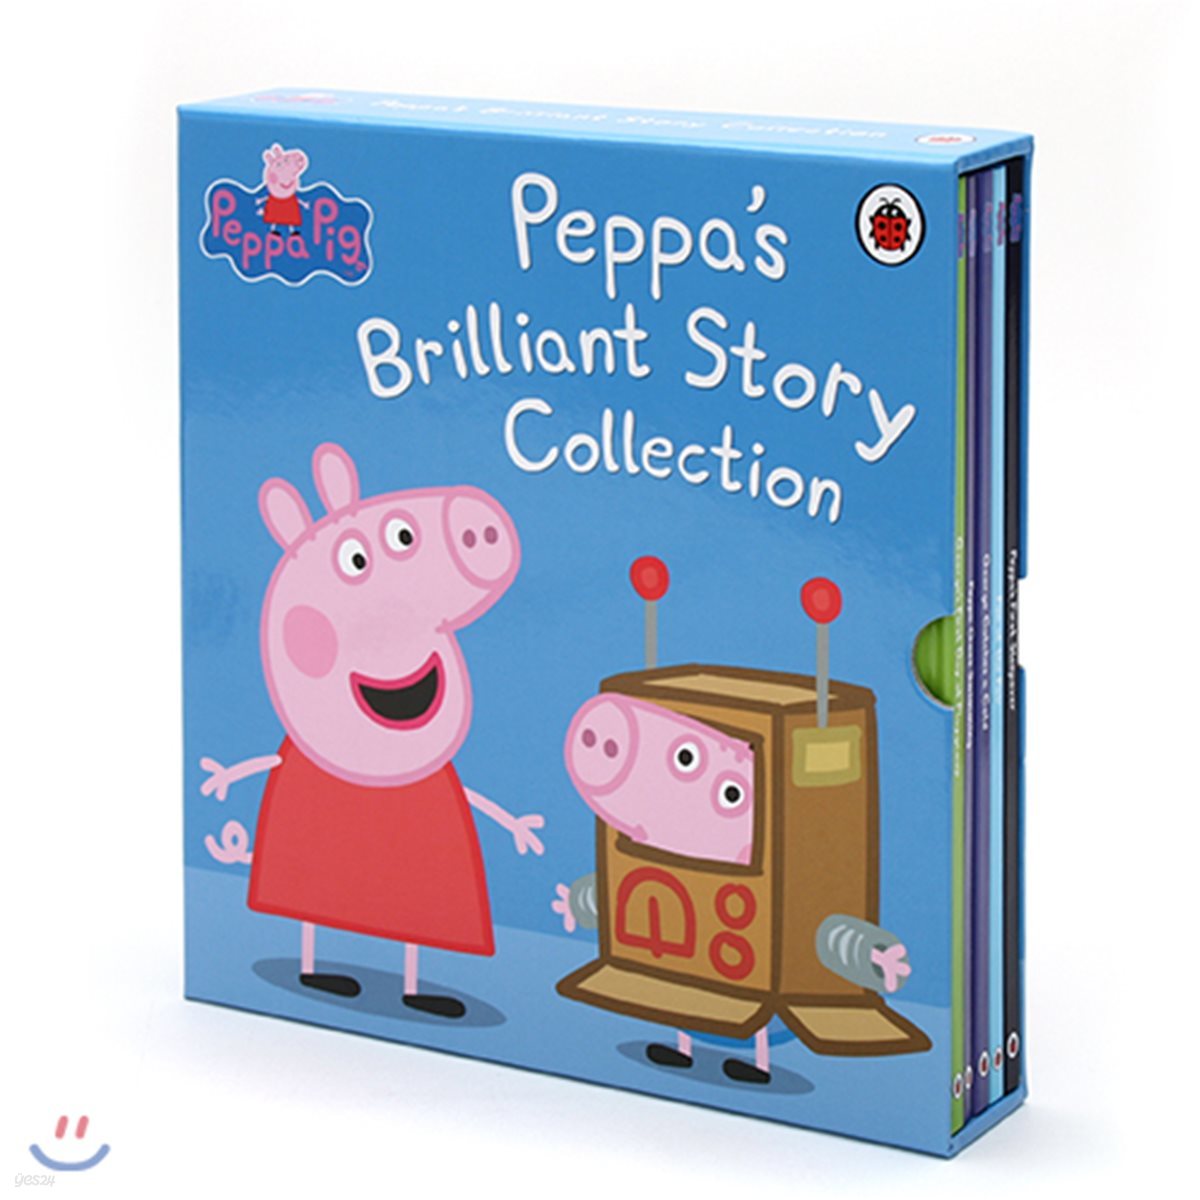 페파 피그의 일상 생활 원서 5종 세트 : Peppa Pig :  Peppa's Brilliant Story Collection